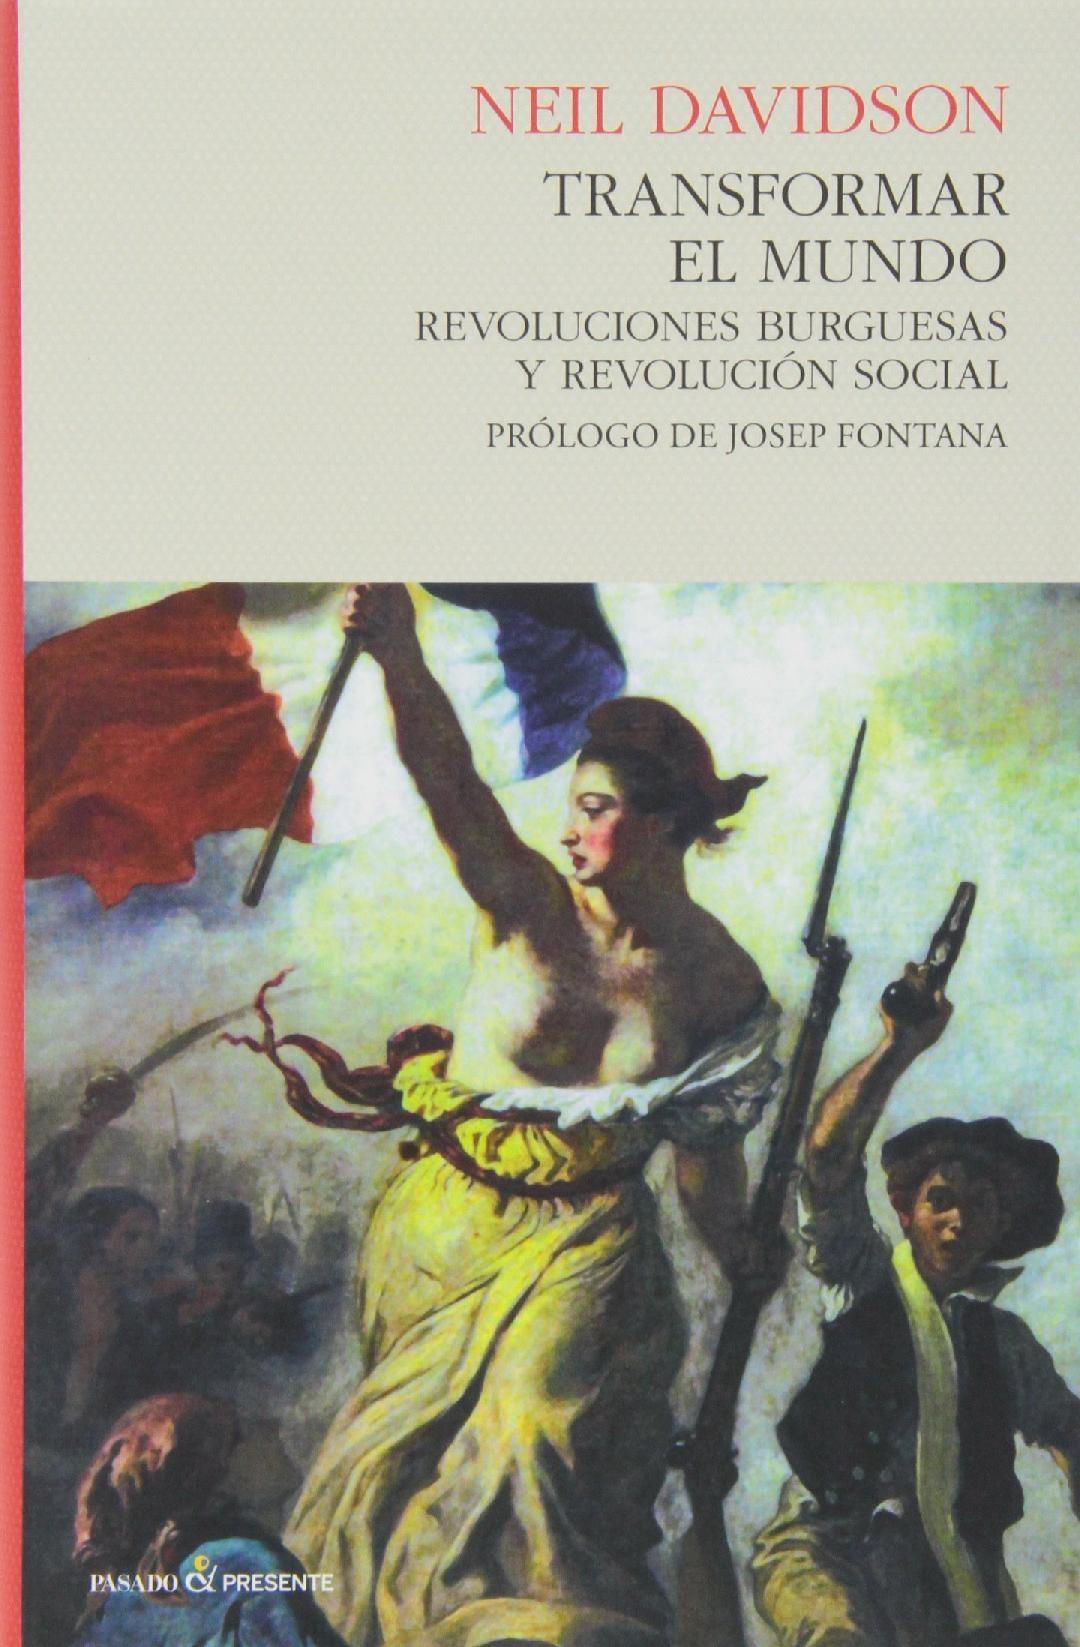 TRANSFORMAR EL MUNDO "REVOLUCIONES BURGUESAS Y REVOLUCIÓN SOCIAL"